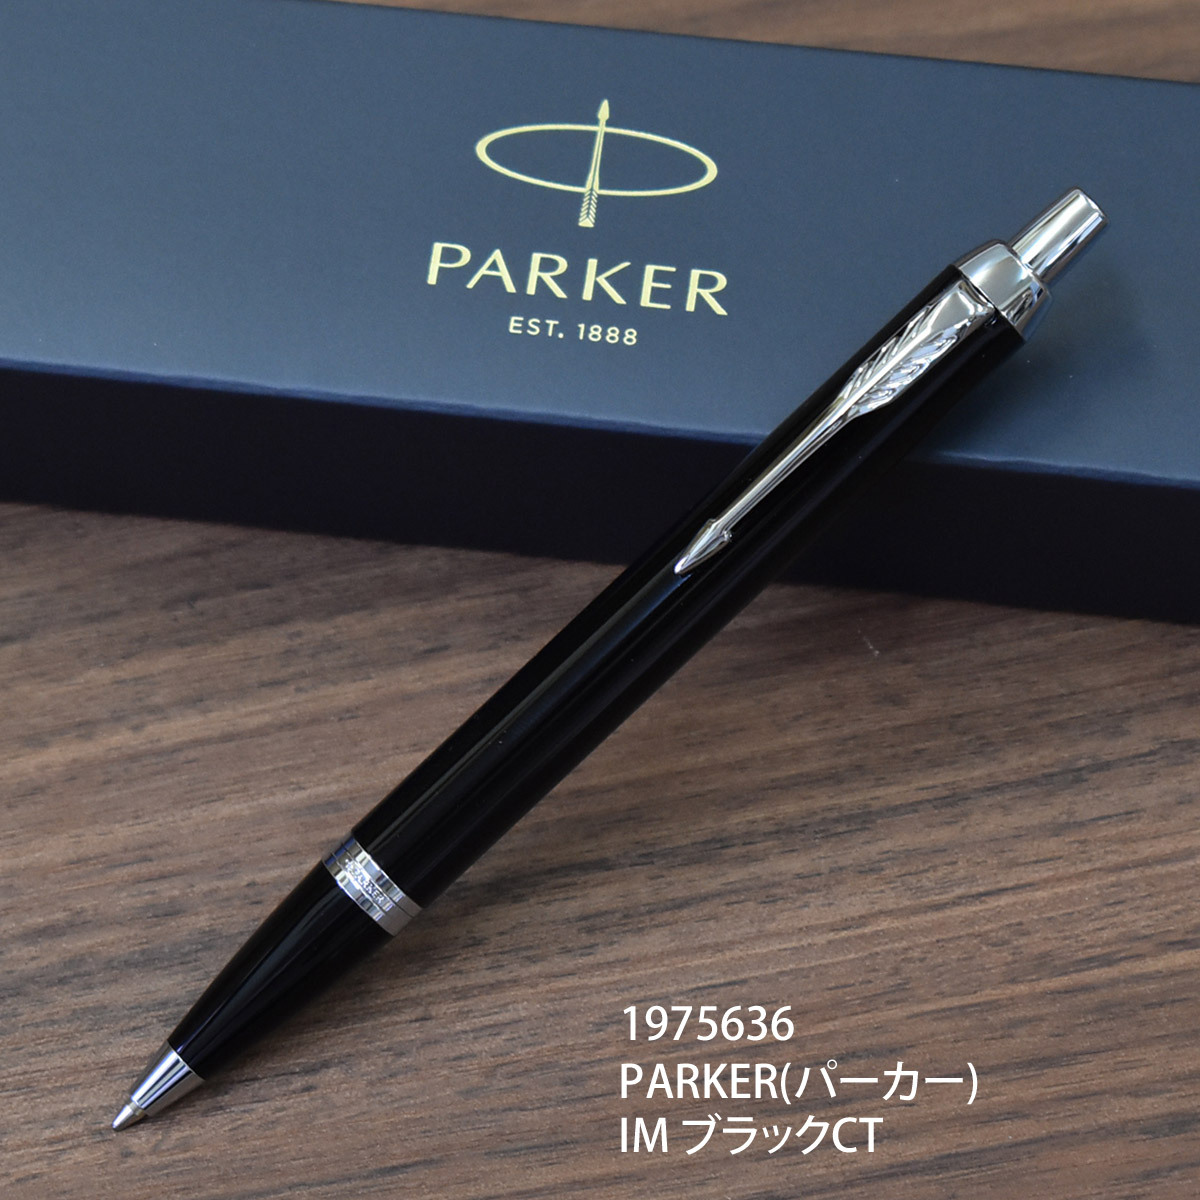 ボールペン 名入れ PARKER(パーカー) ブランド筆記具 男性・女性